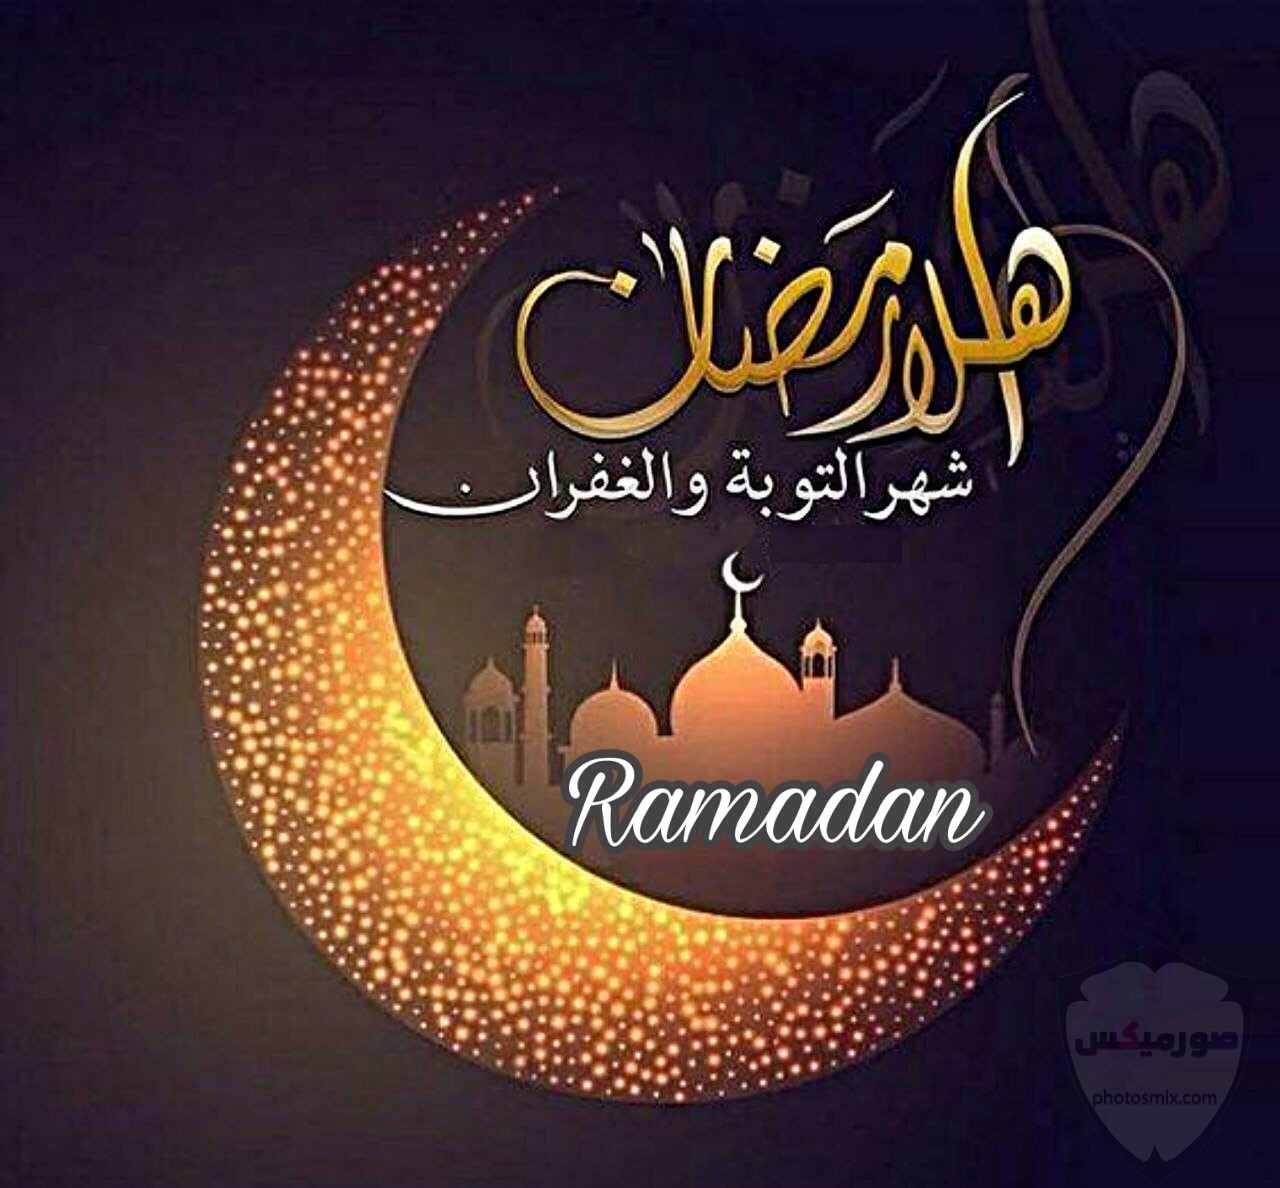 أدعية شهر رمضان 2020 مكتوبة “حصن المسلم” 5